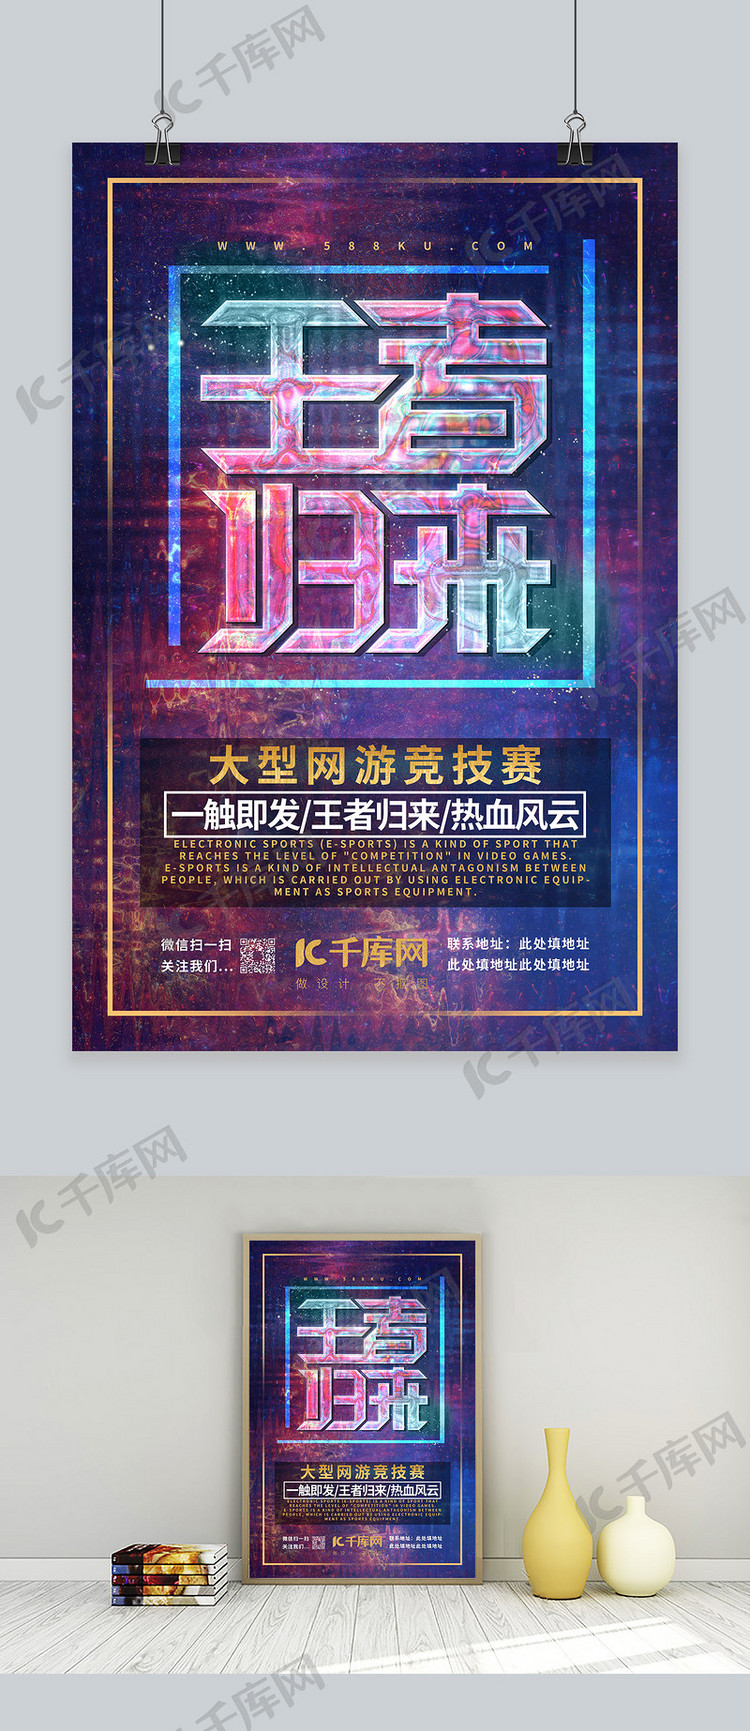 游戏王者荣耀网游热血竞技比赛游戏宣传海报